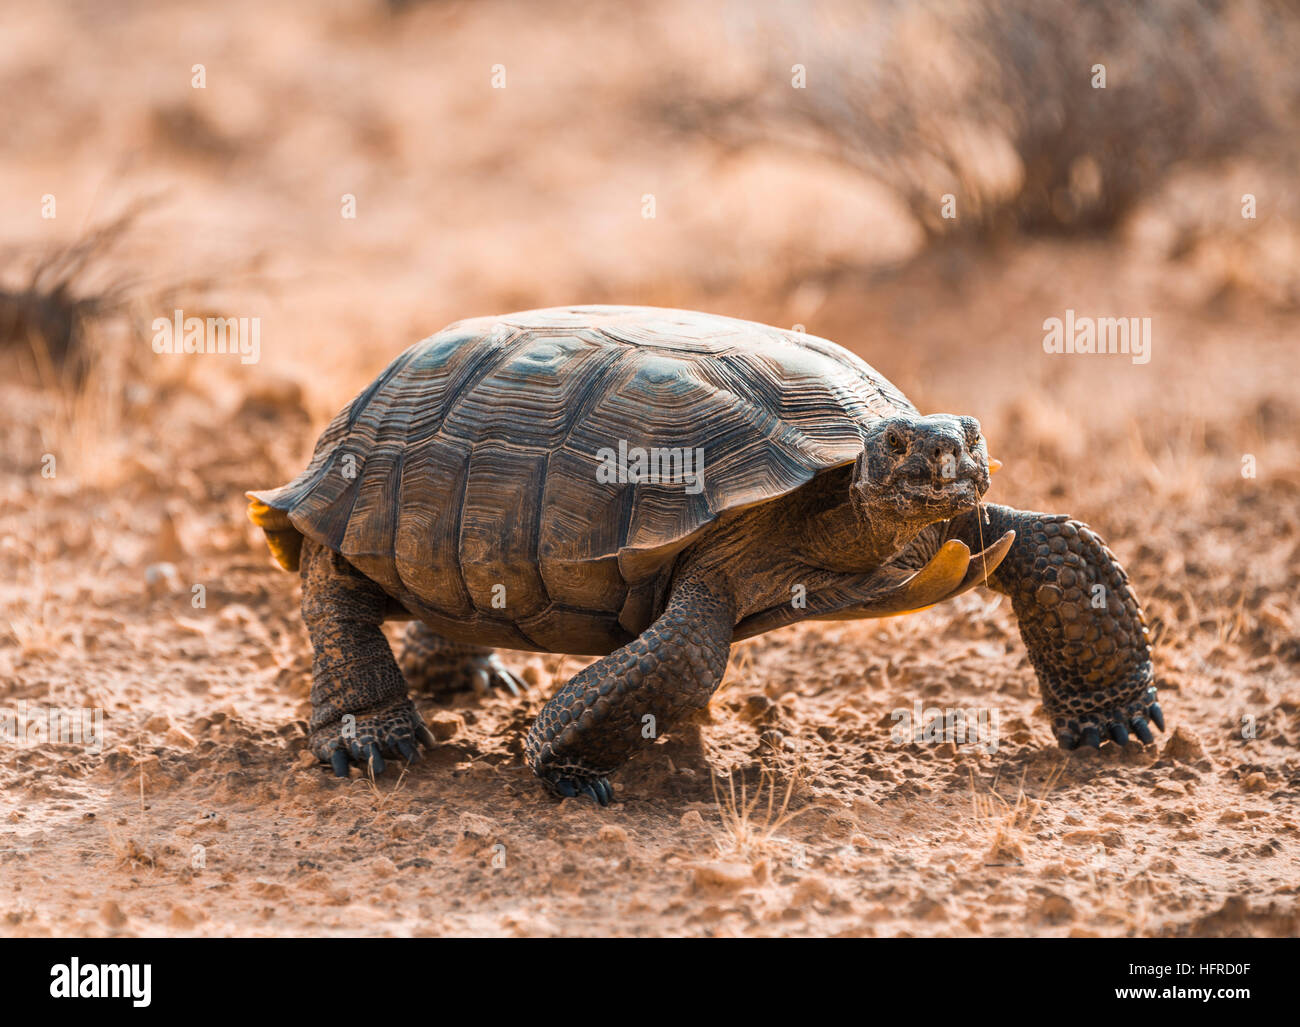 Agassiz il deserto della tartaruga (Gopherus agassizii) camminare in terreno asciutto, la Valle del Fuoco, Deserto Mojave, Nevada, STATI UNITI D'AMERICA Foto Stock